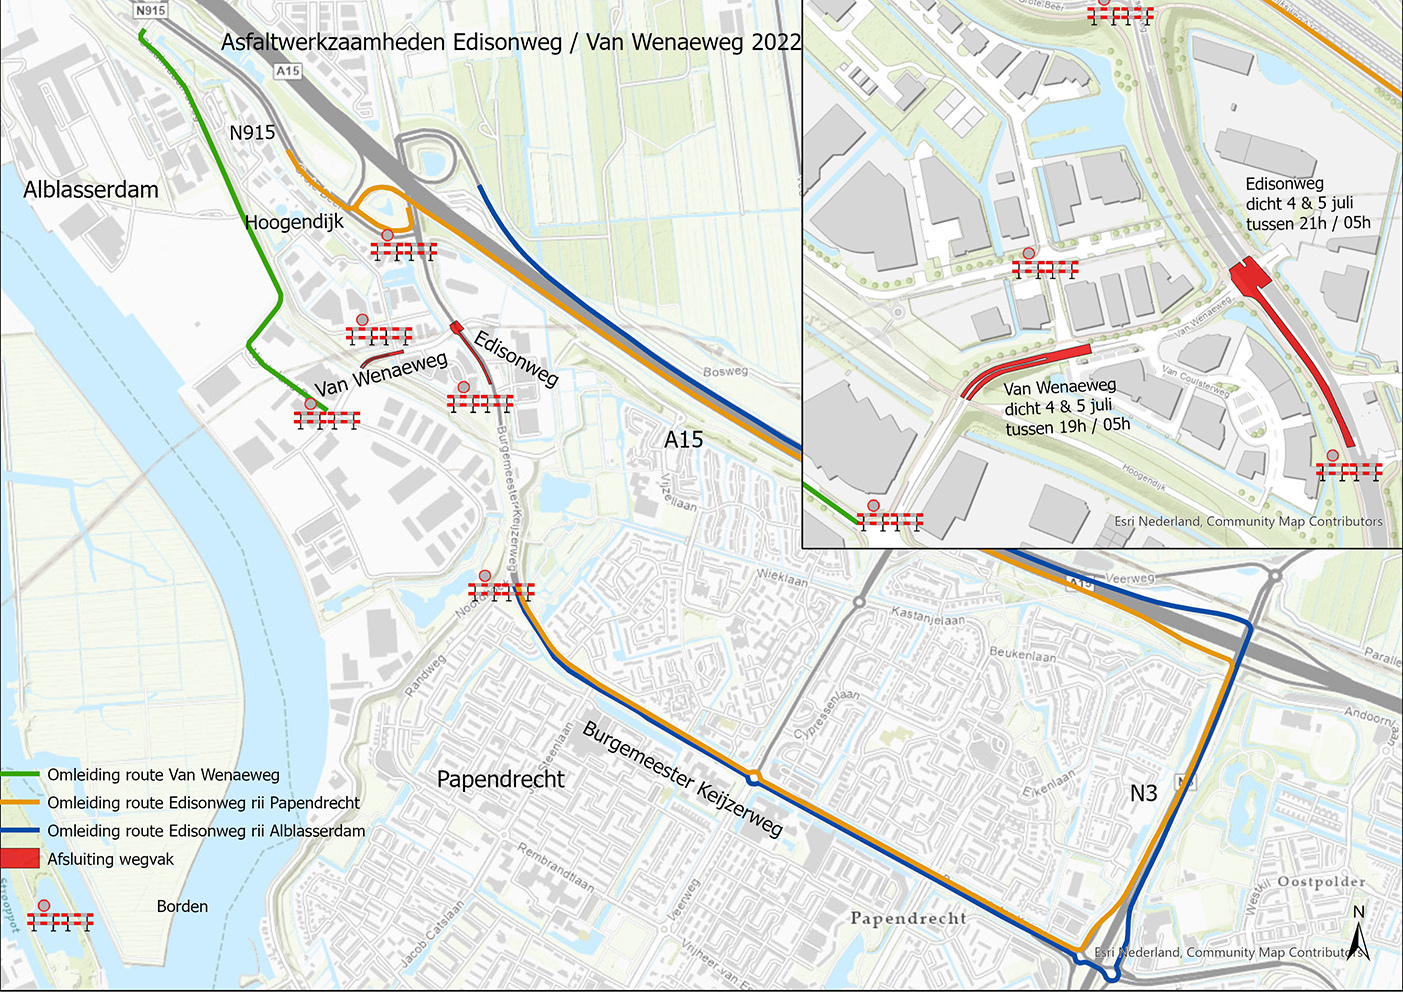 Kaart met afsluitingen en omleidingen in verband met werk aan de Van Wenaeweg en Edisonweg